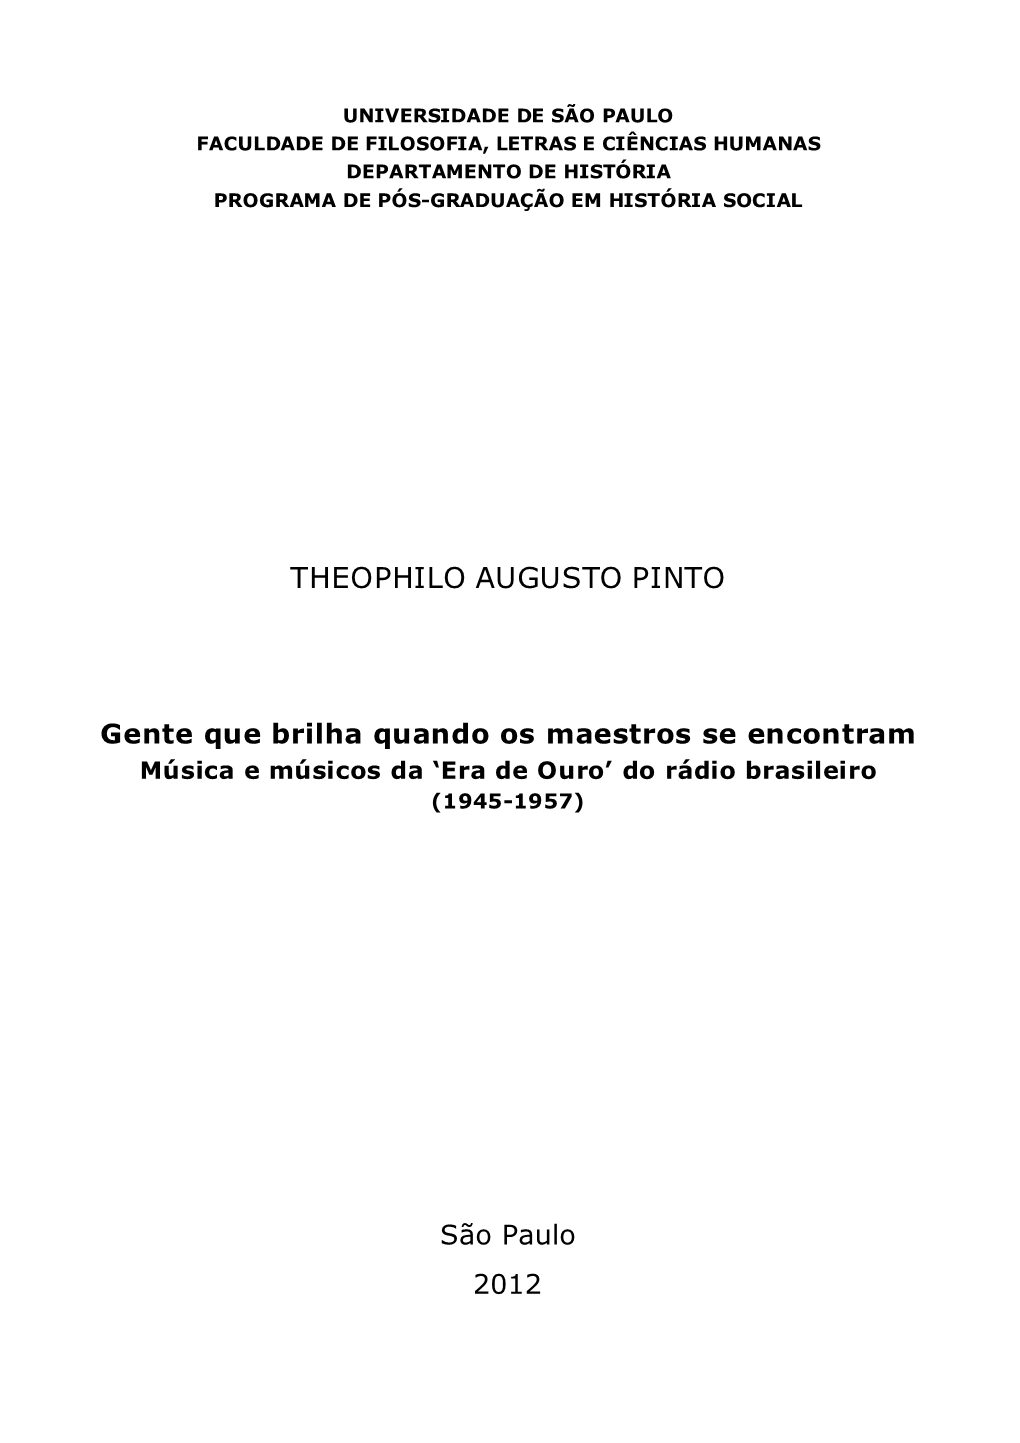 Theophilo Augusto Pinto